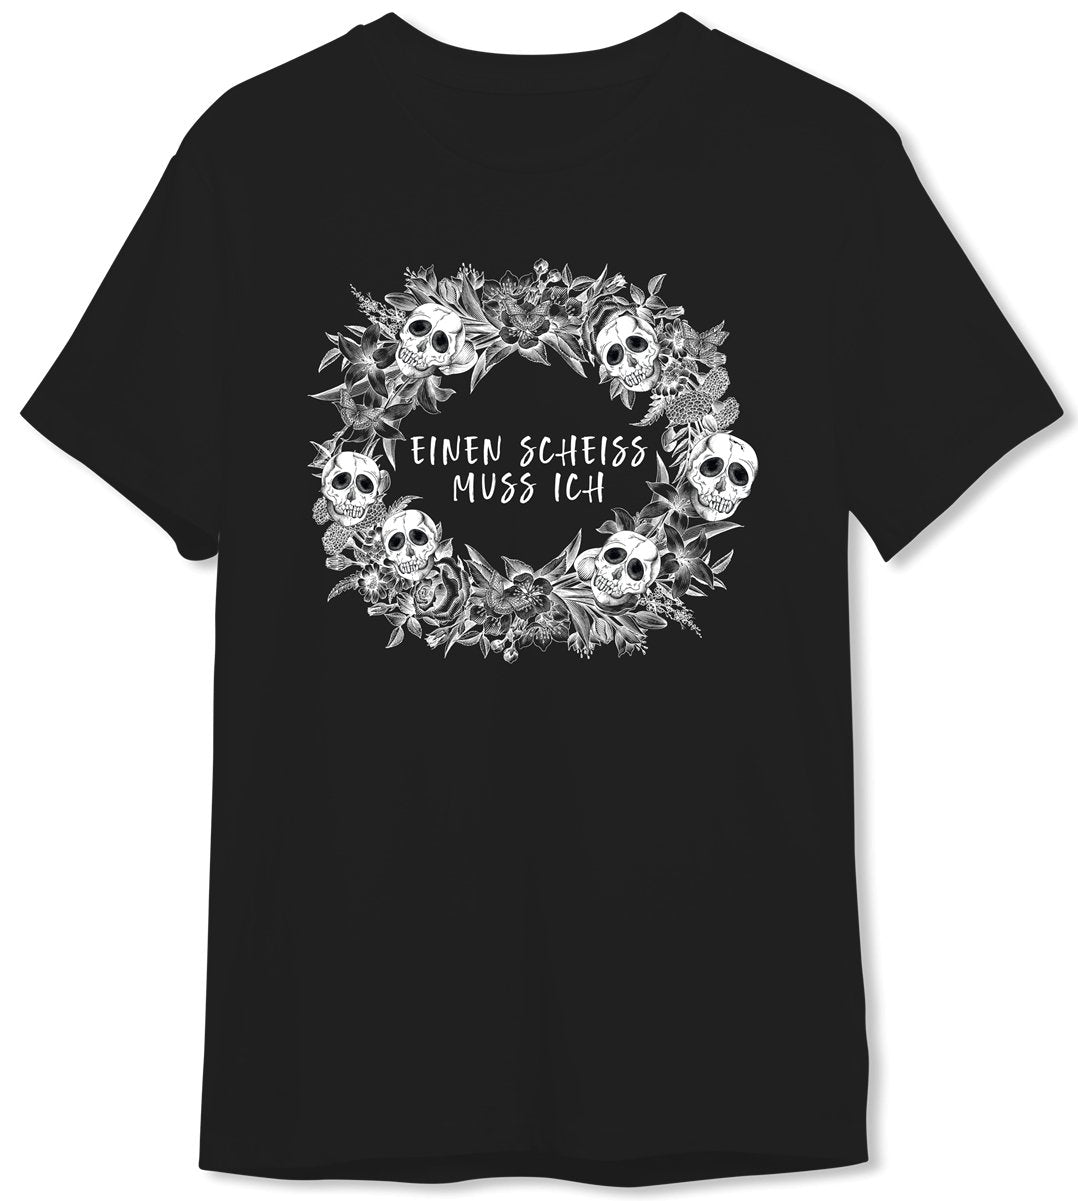 Bild: T-Shirt Herren - Einen Scheiss muss ich - Skull Statement Geschenkidee